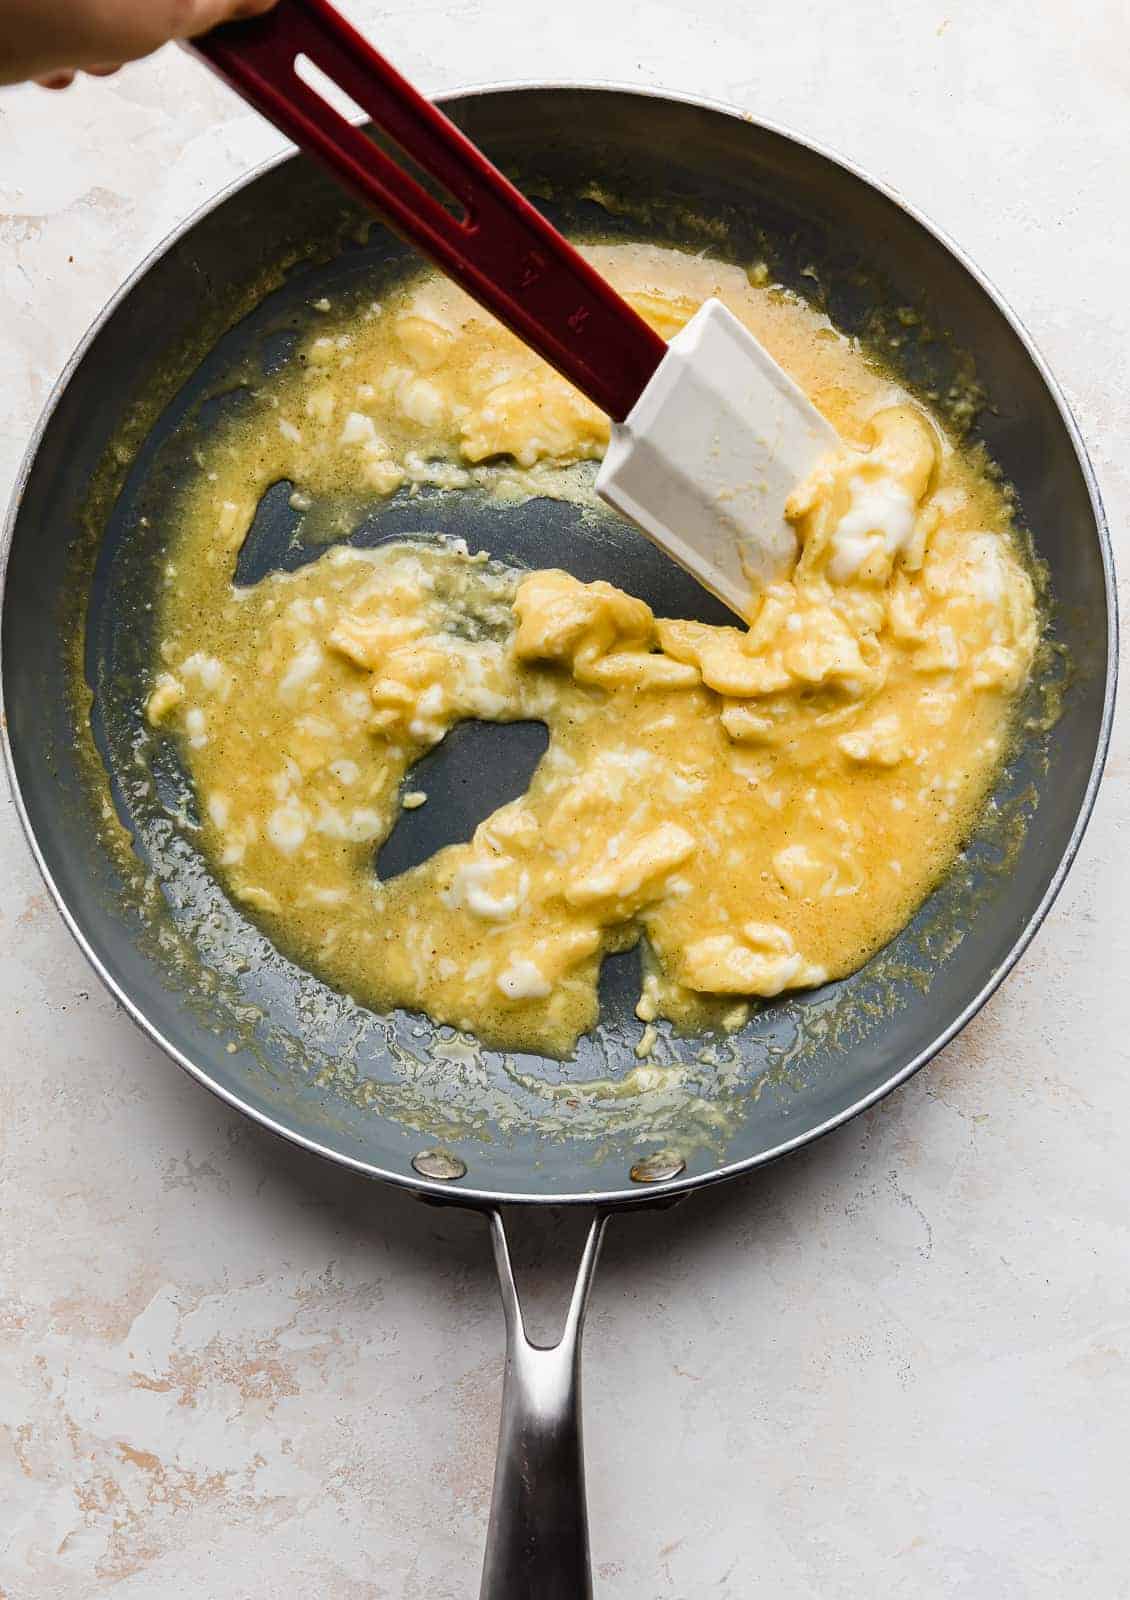 A spatula stirring a scrambled egg mixture in a skillet.